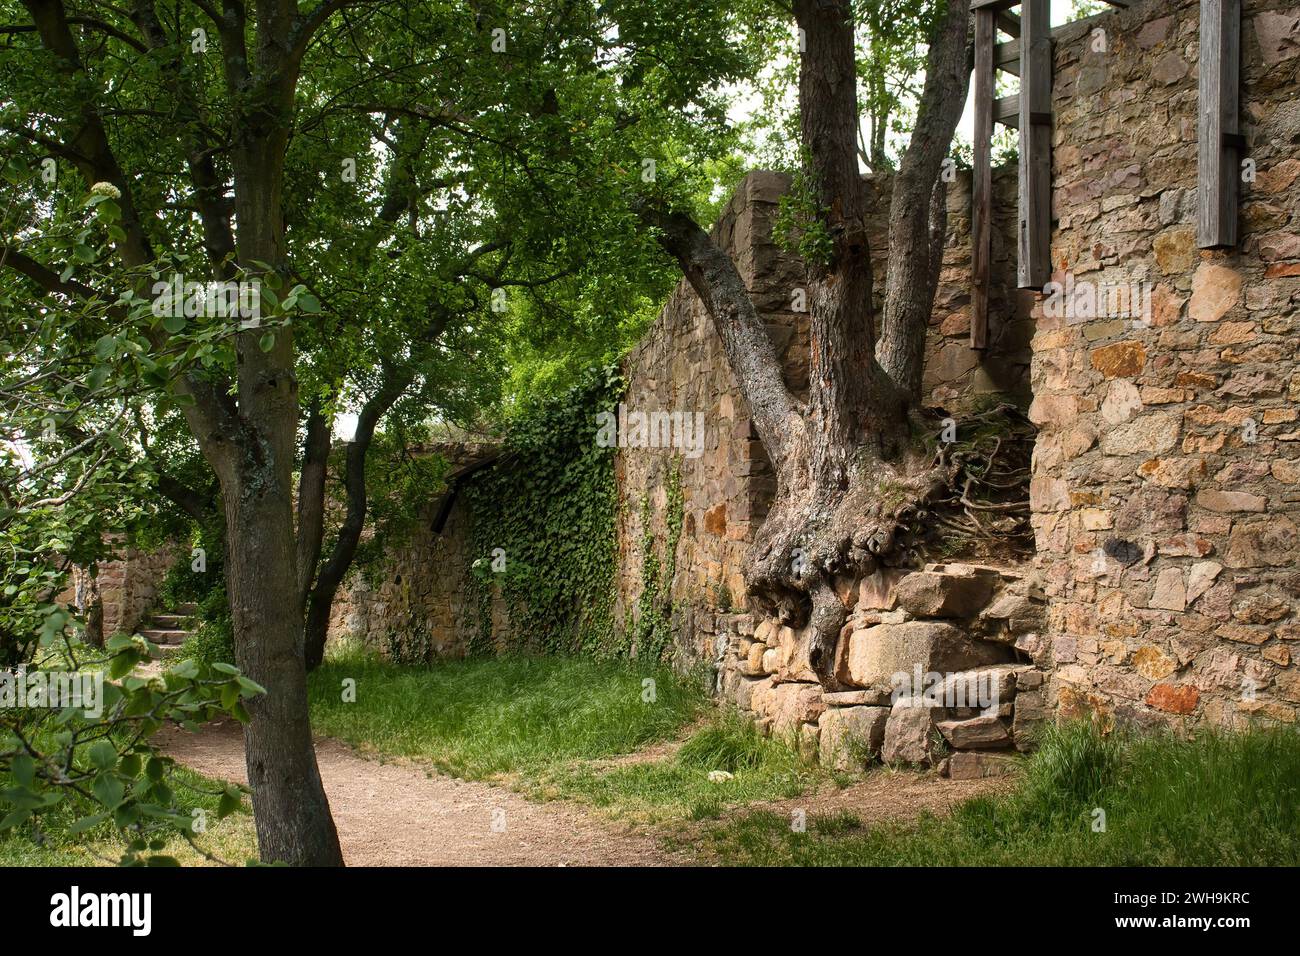 Arbre poussant hors du mur autour des ruines du château inm Rhénanie Palatinat, Allemagne un jour de printemps. Banque D'Images